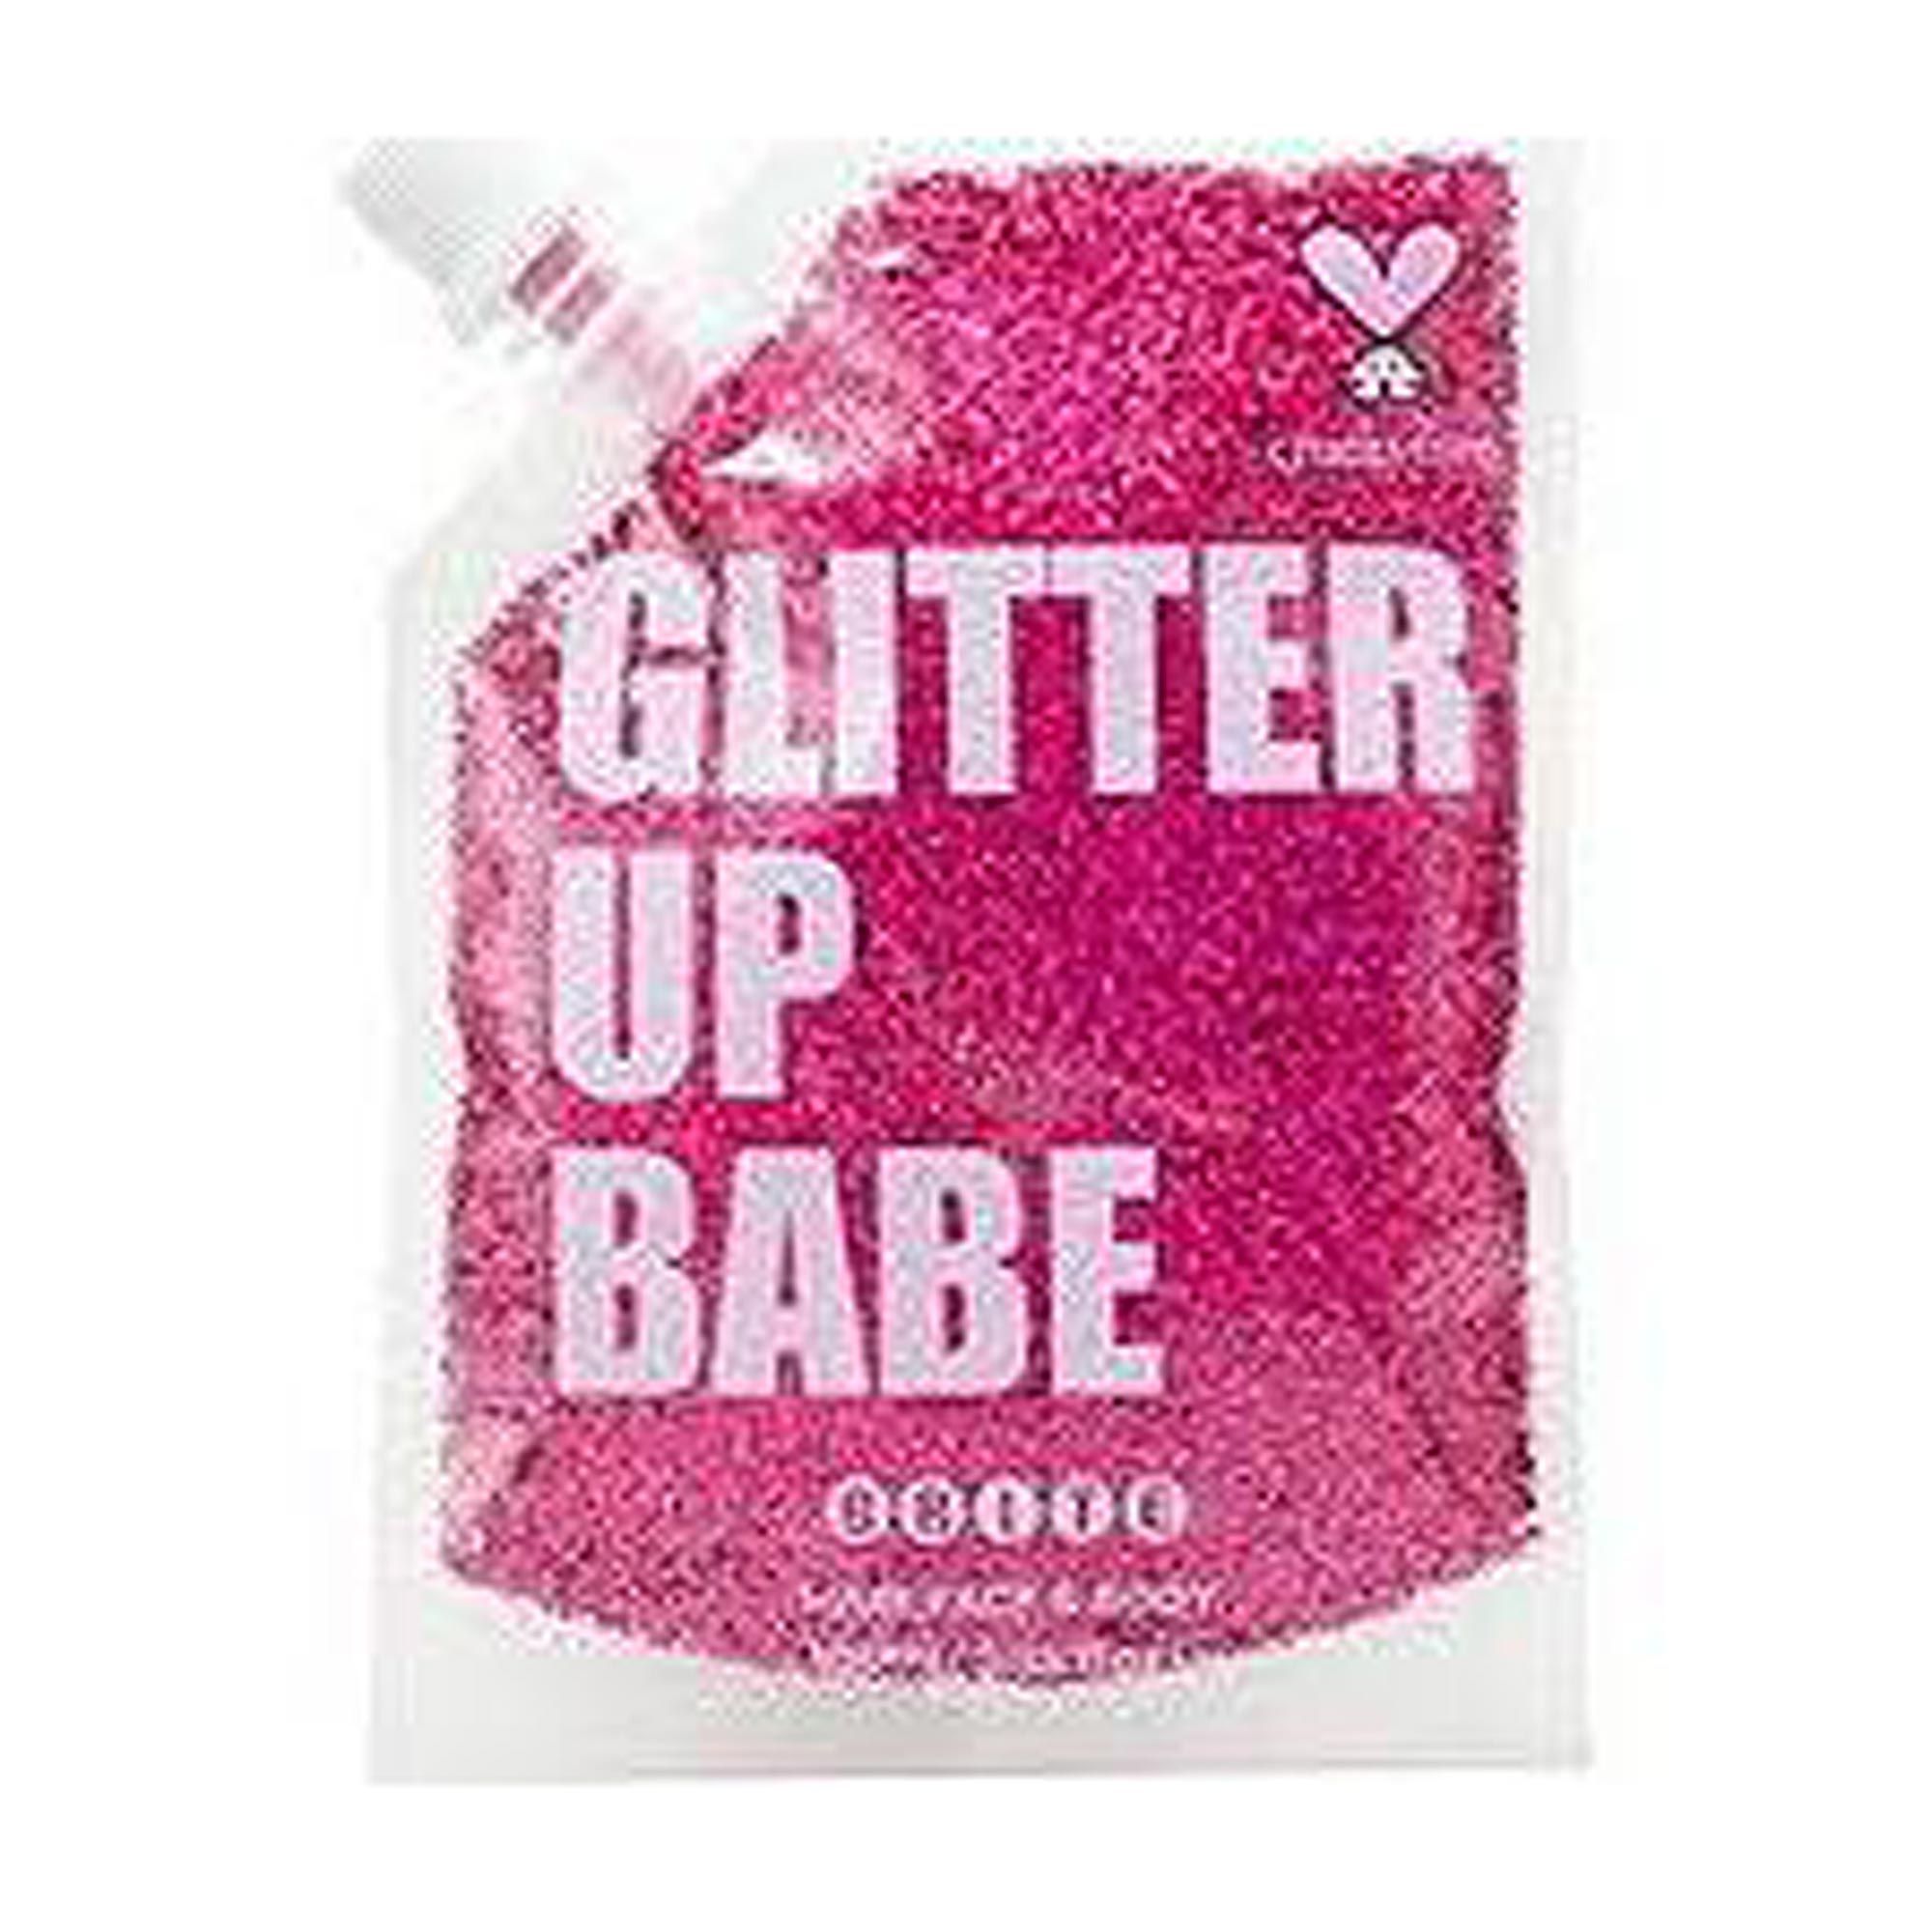 Brite Glitter Up Babe